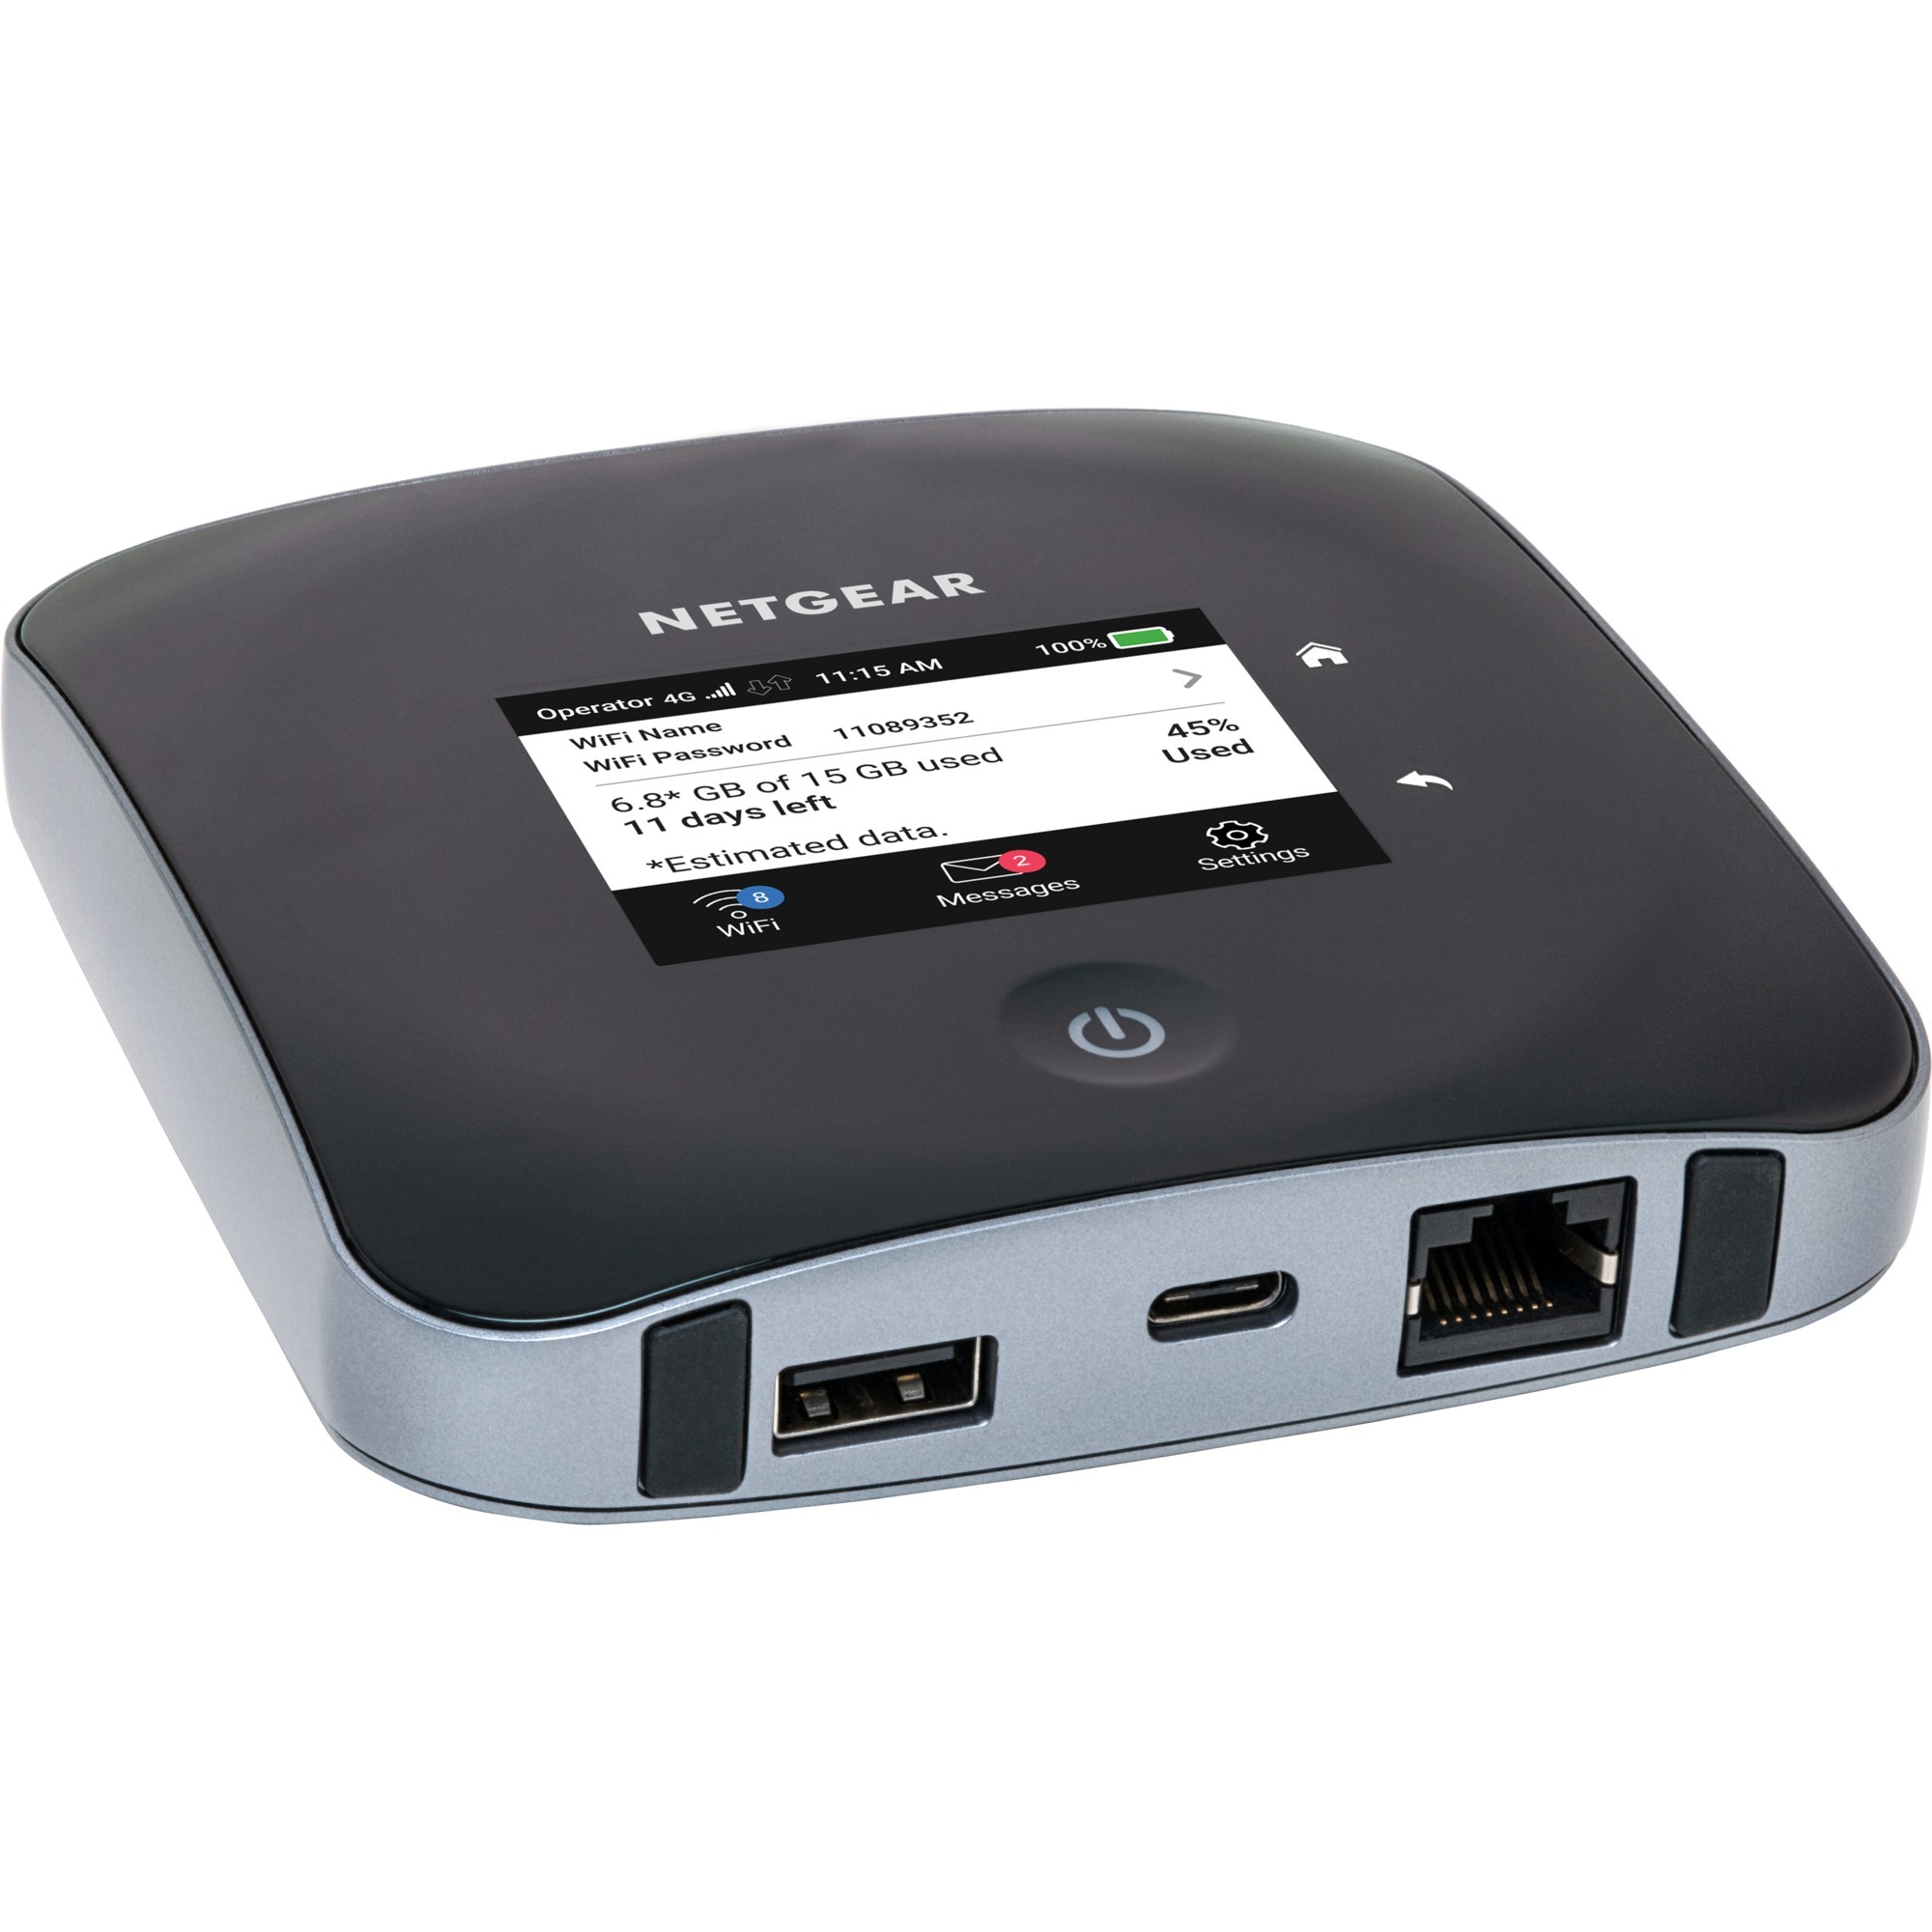 Image of Alternate - Nighthawk M2 LTE Mobiler Hotspot, Router online einkaufen bei Alternate